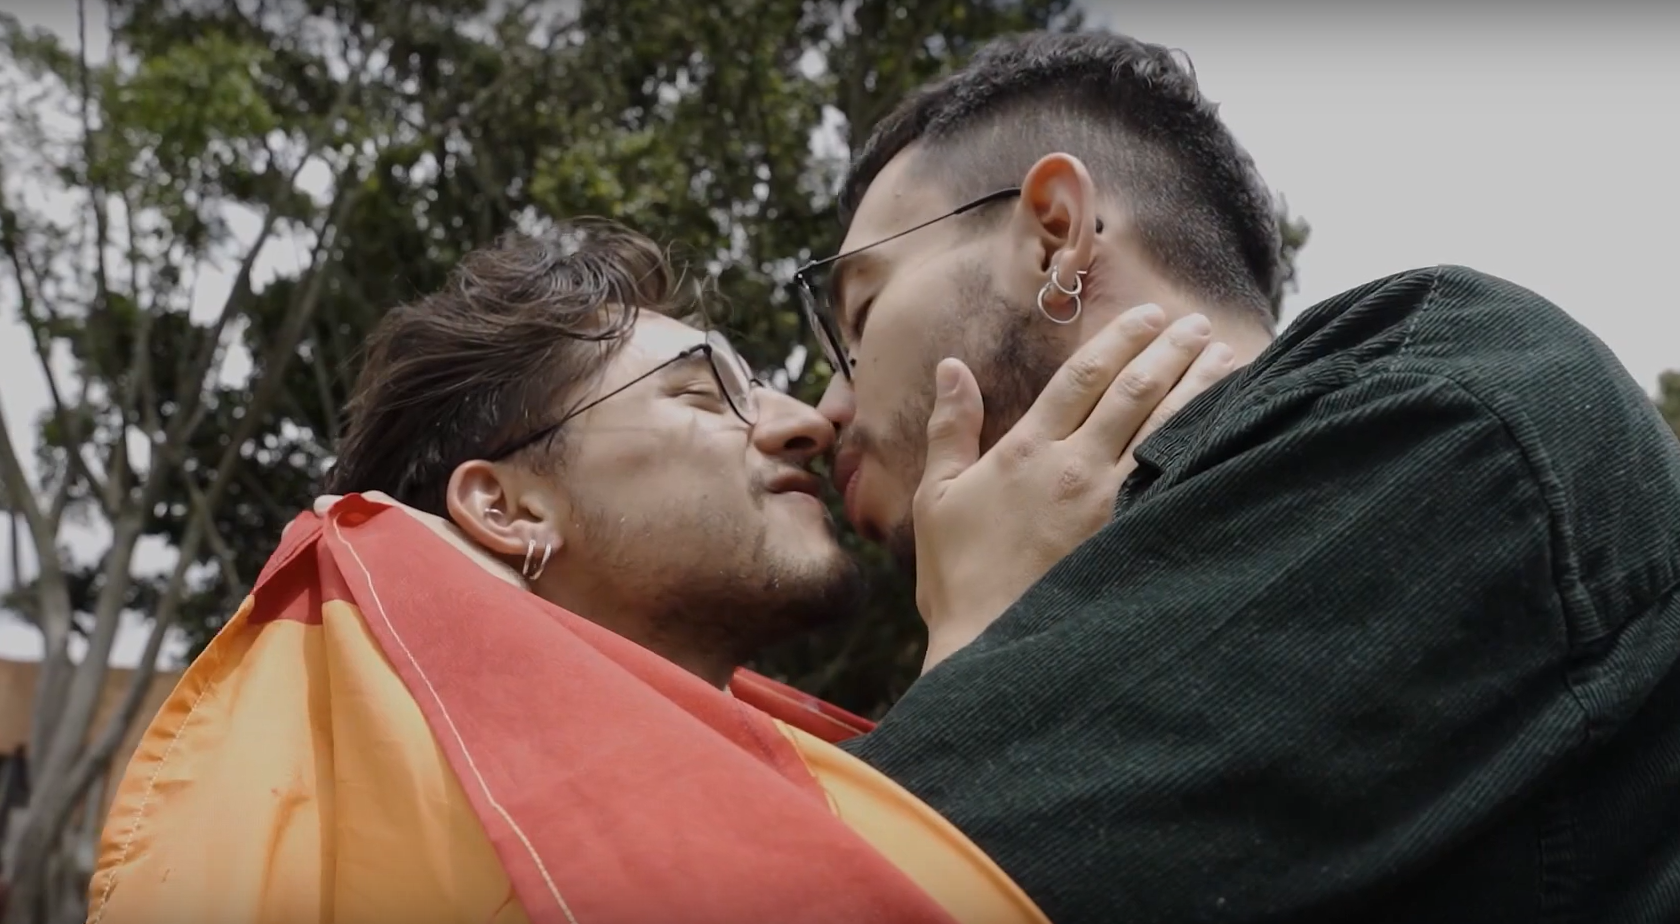 Colombianos homosexuales luchan contra los intolerantes con un "maratón de besos"